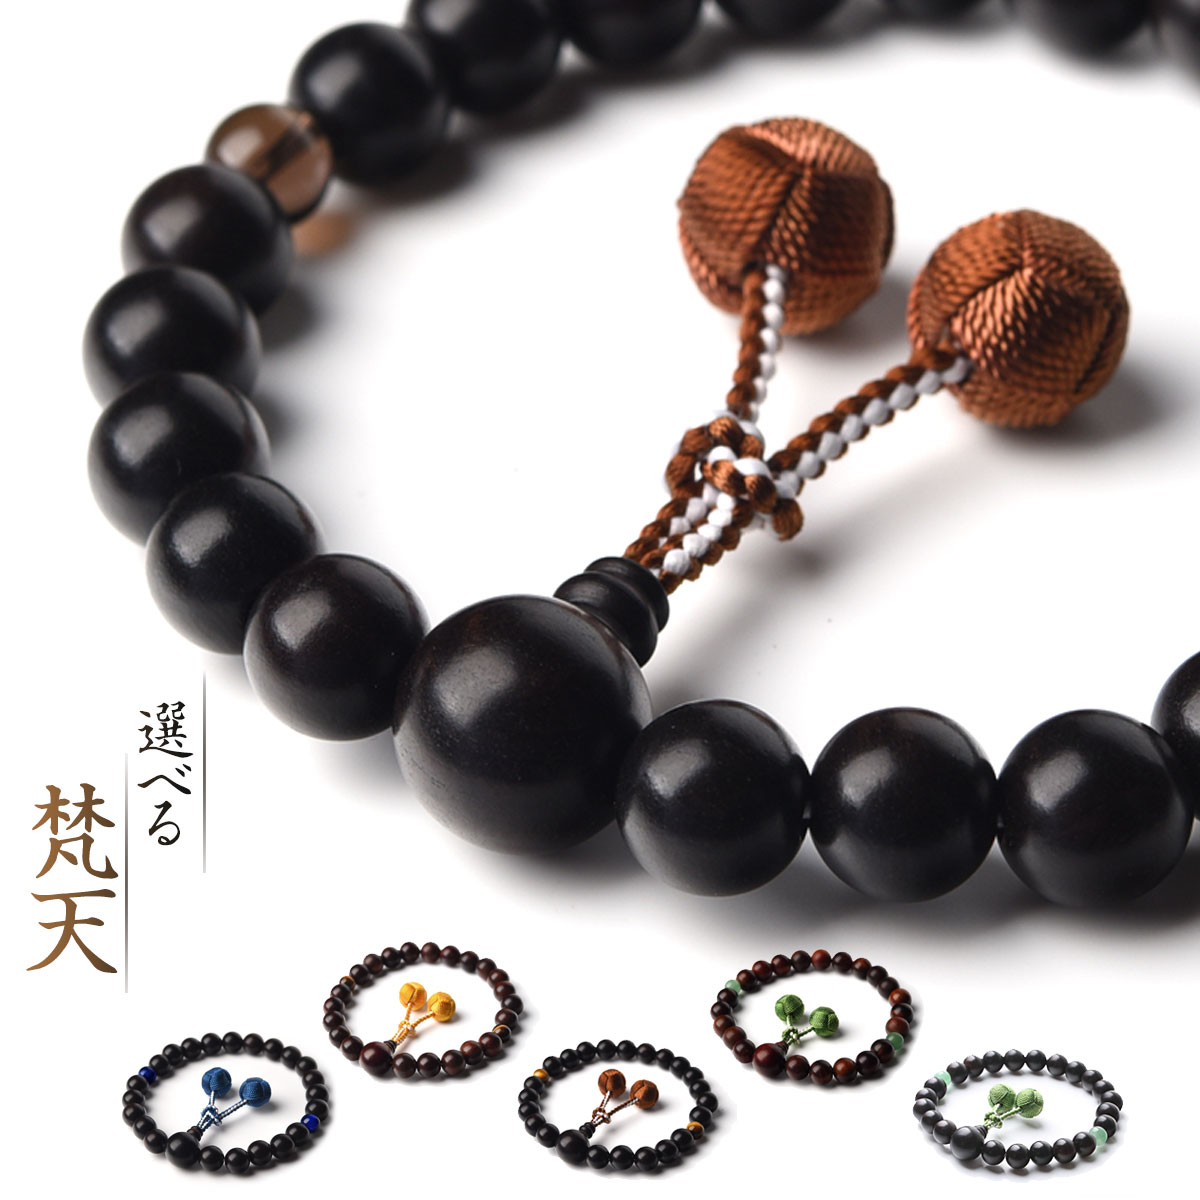 京都からの発送 天然素材使用し職人丁寧に作った数珠で すべての宗派で使えます 数珠 男性用 多種類 選べる 大好評です 梵天房 特典付 天然素材 送料無料 梵天 juzu02 数珠入れ 発売モデル 13mm 念珠